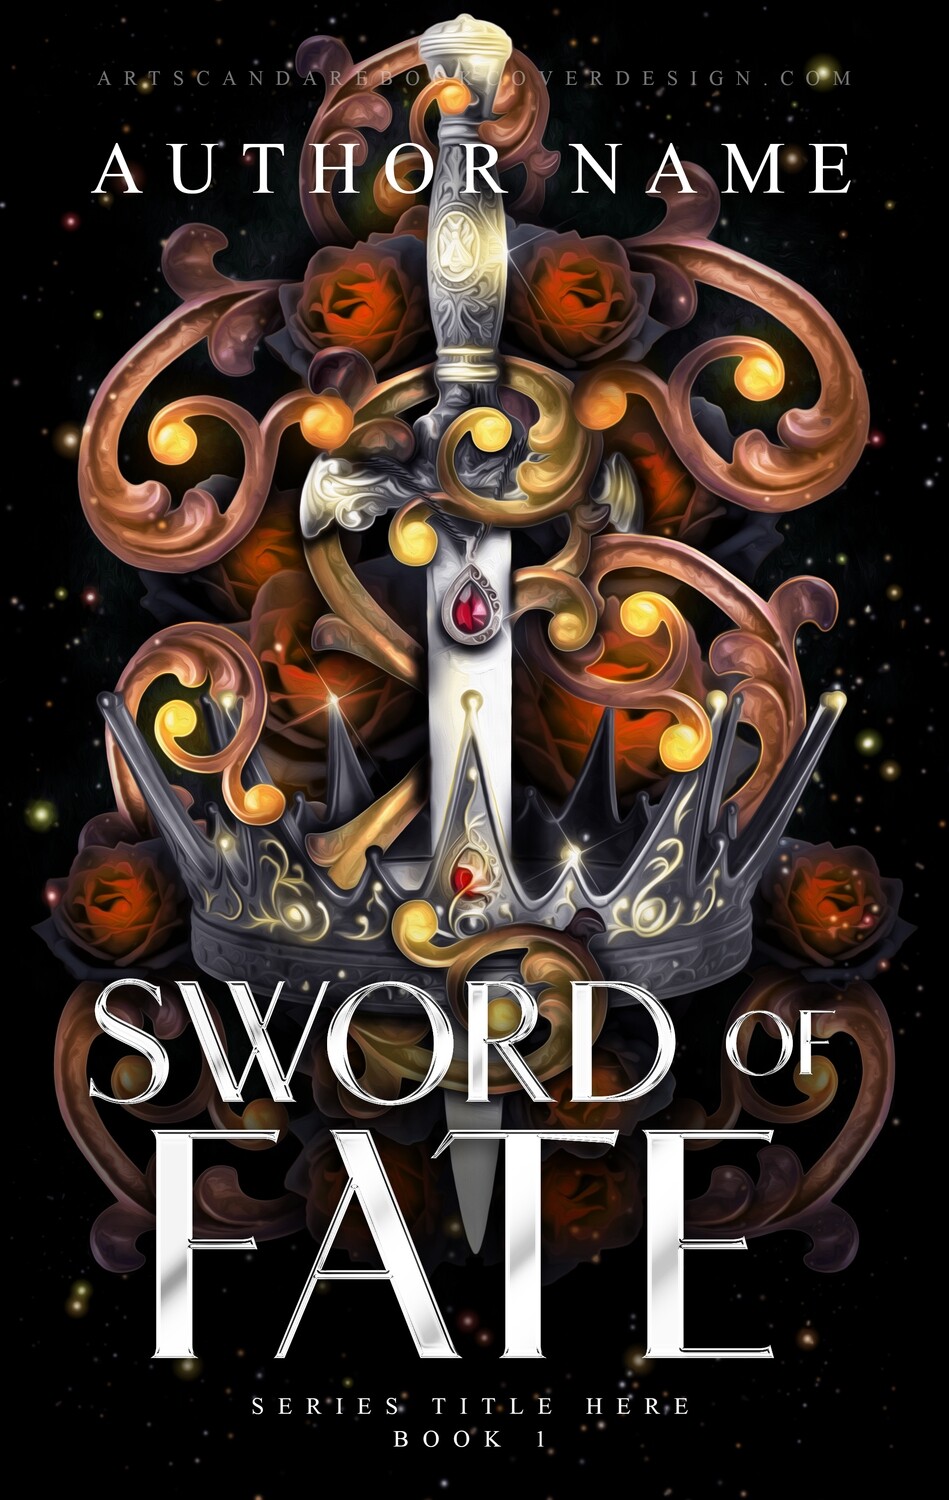 SWORD OF FATE